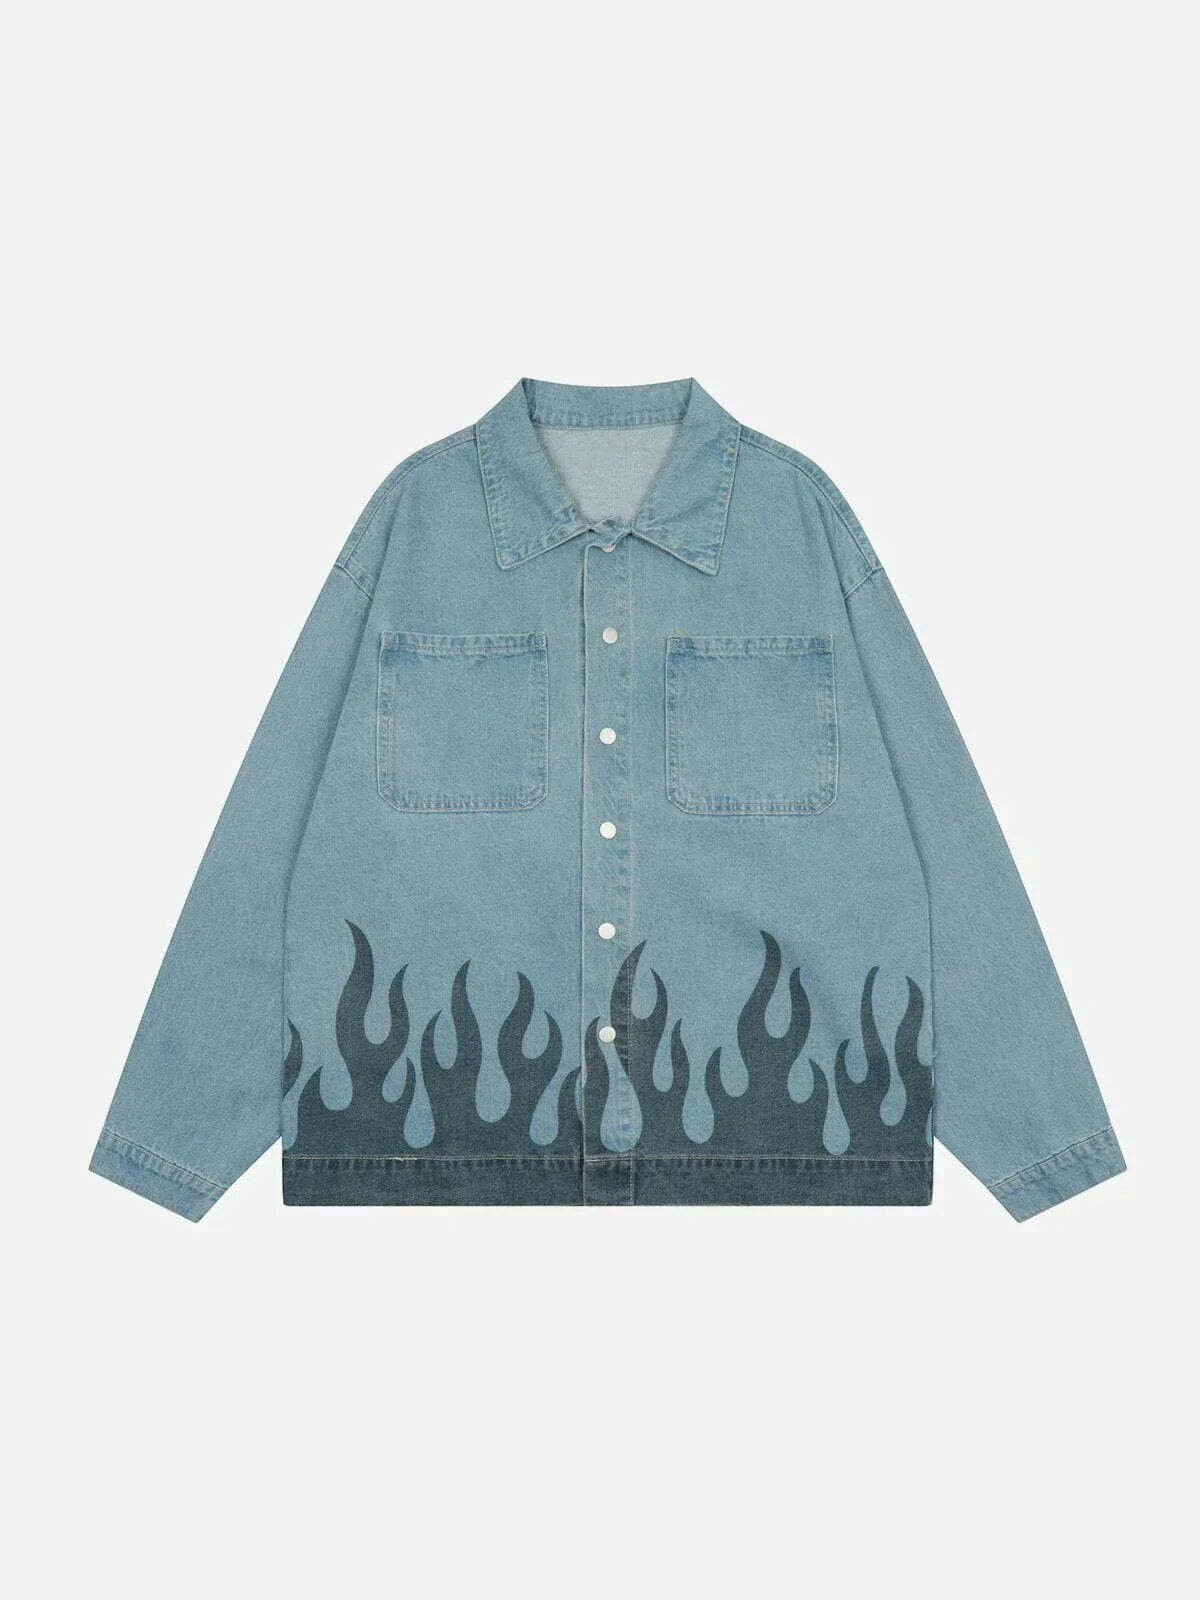 flame print denim jacket edgy & vibrant streetwear 5548